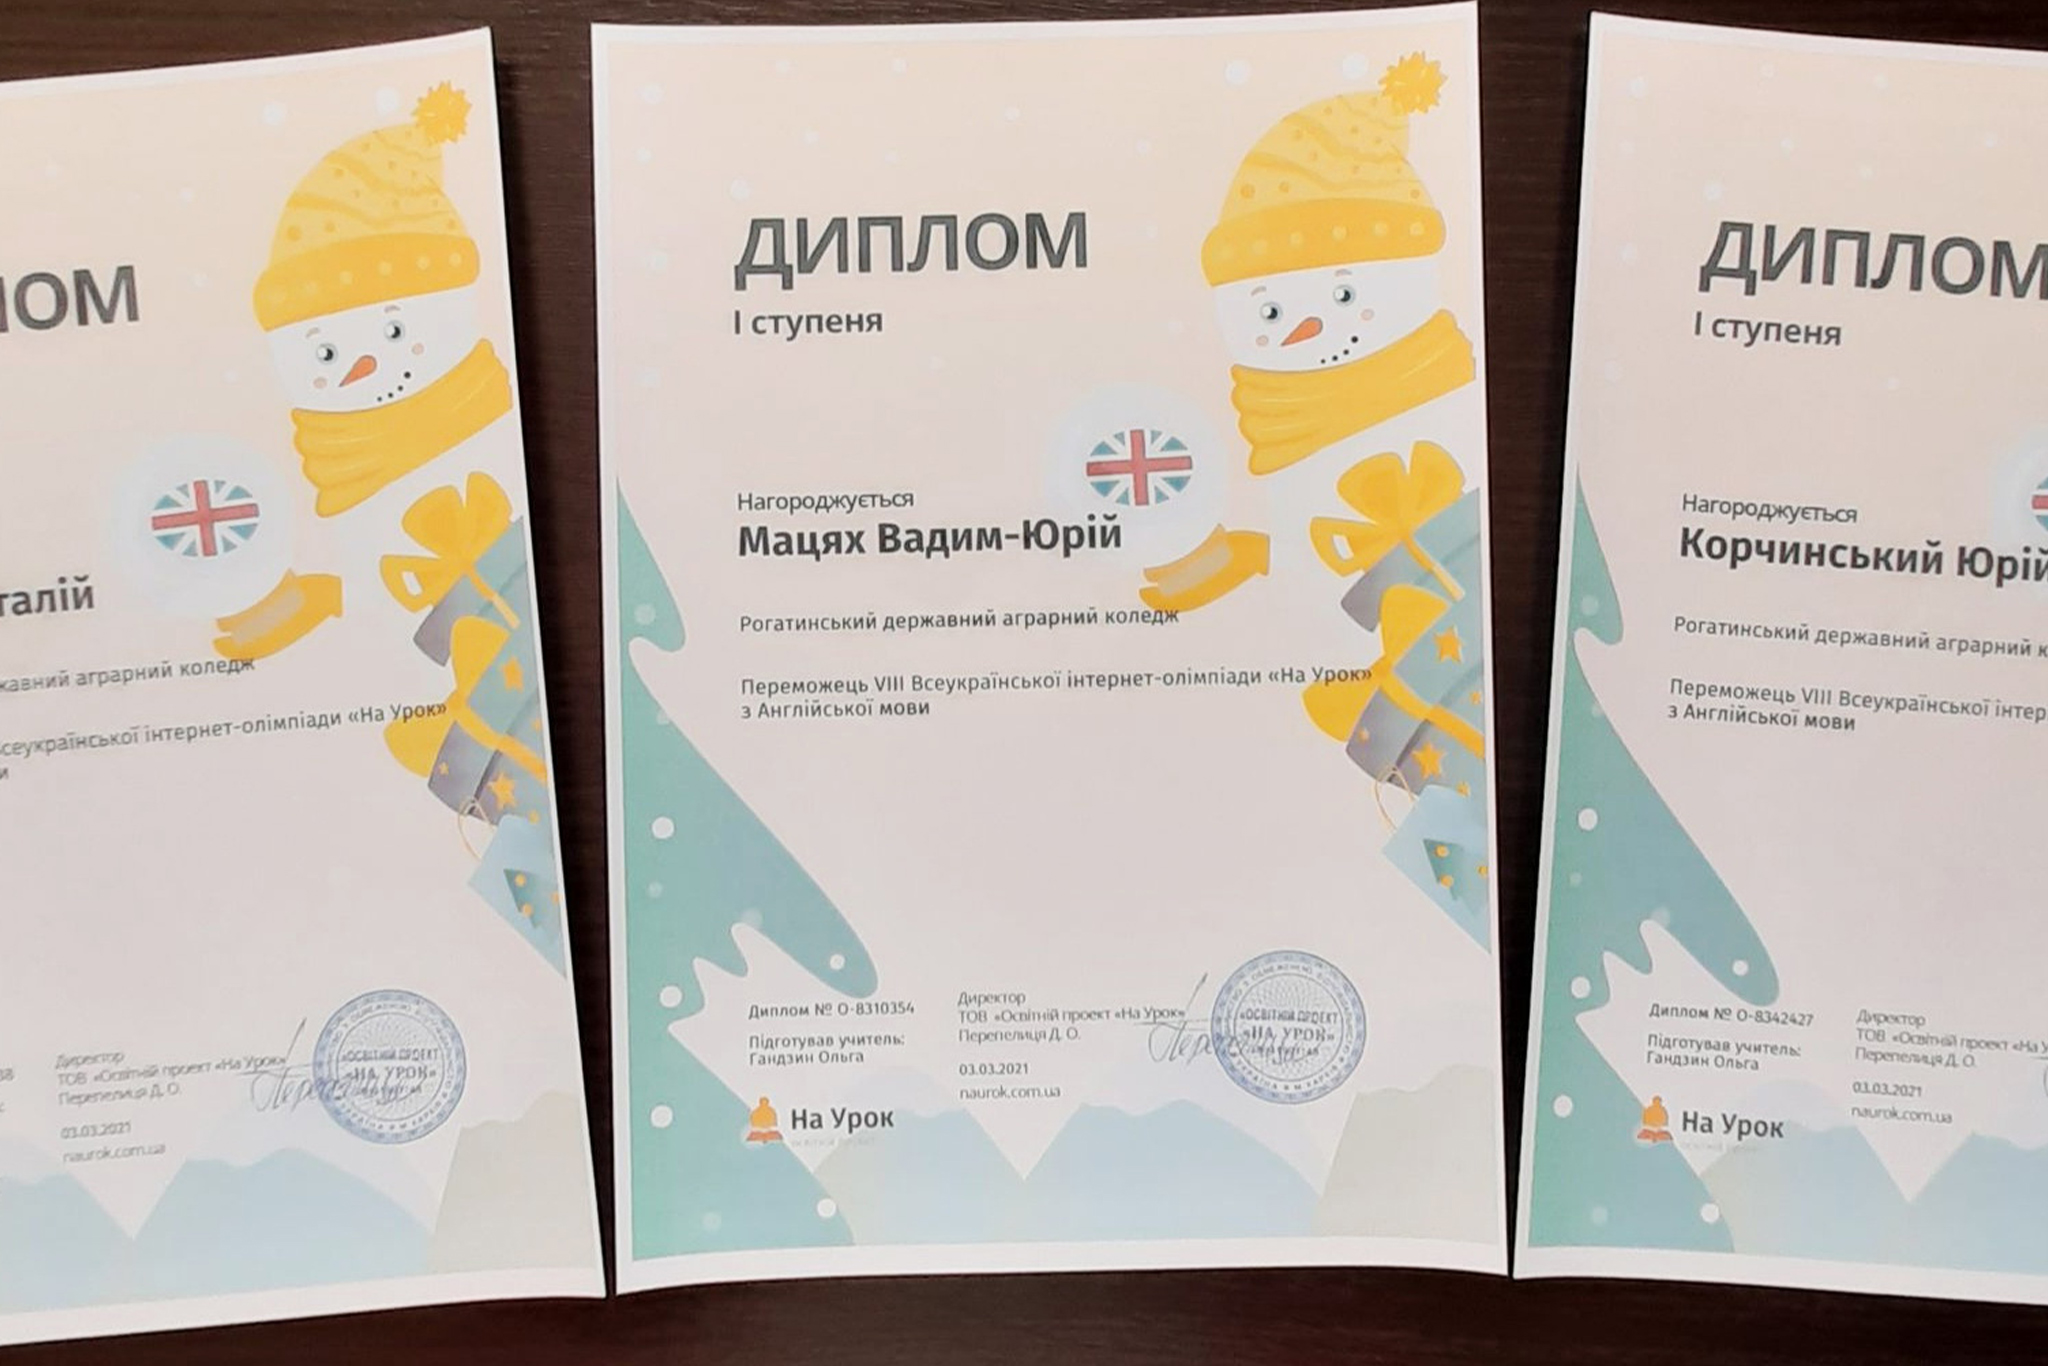 Всеукраїнська інтернет-олімпіада «На урок» – переможці у Рогатинському державному аграрному коледжі!